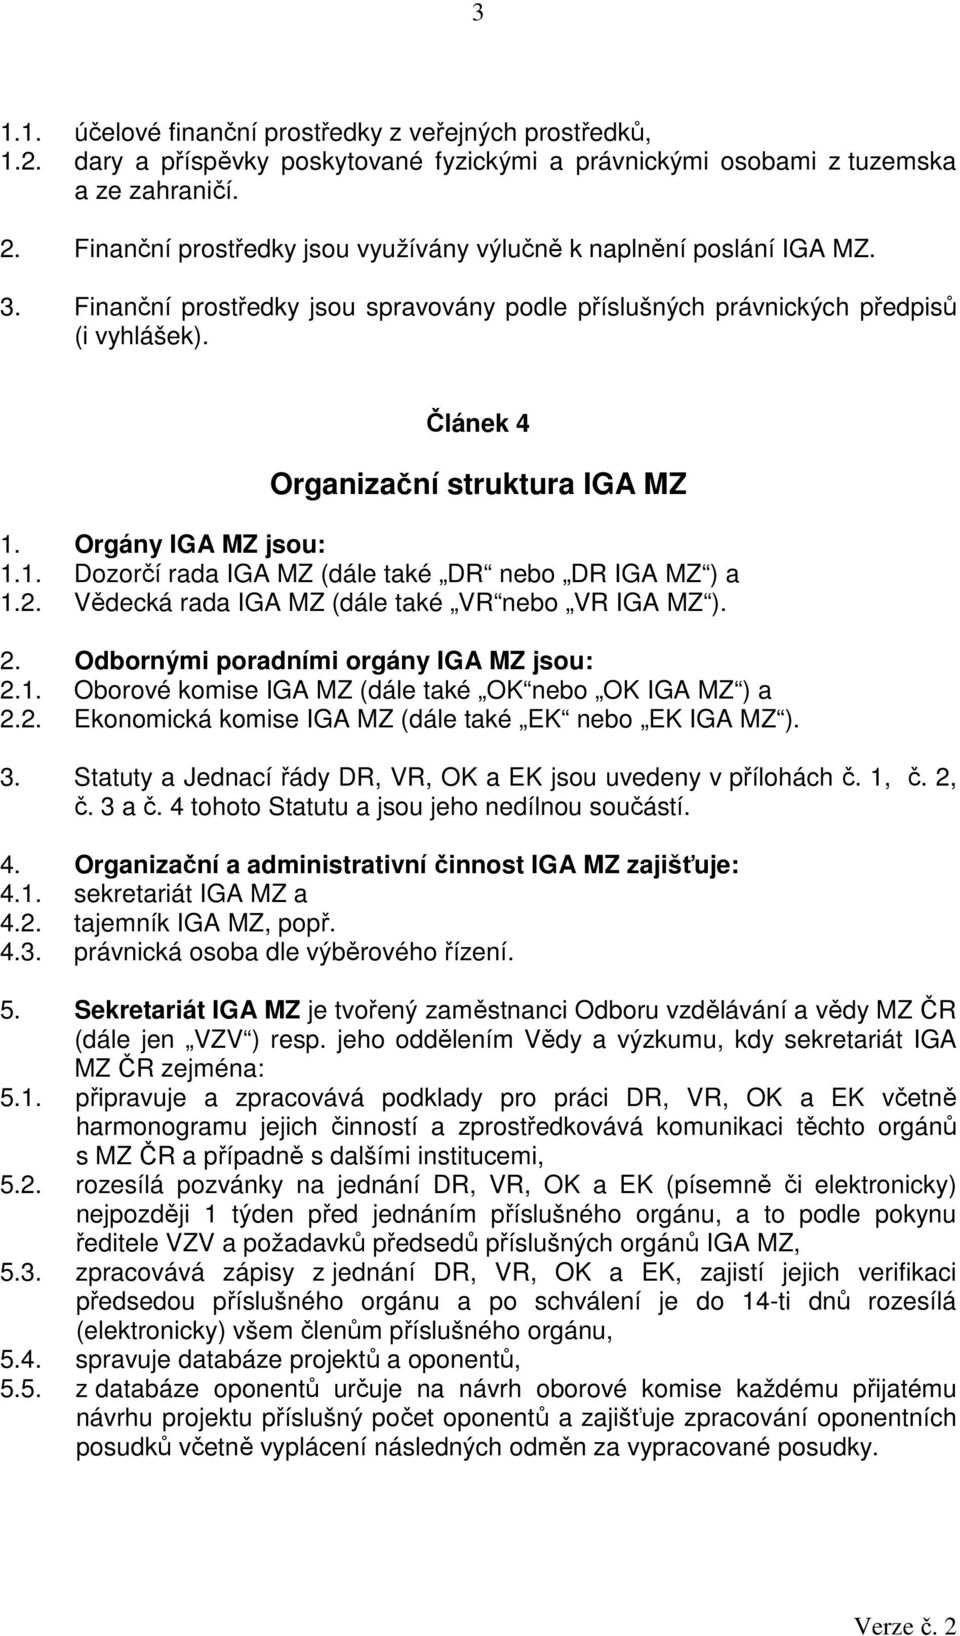 Článek 4 Organizační struktura IGA MZ 1. Orgány IGA MZ jsou: 1.1. Dozorčí rada IGA MZ (dále také DR nebo DR IGA MZ ) a 1.2. Vědecká rada IGA MZ (dále také VR nebo VR IGA MZ ). 2.